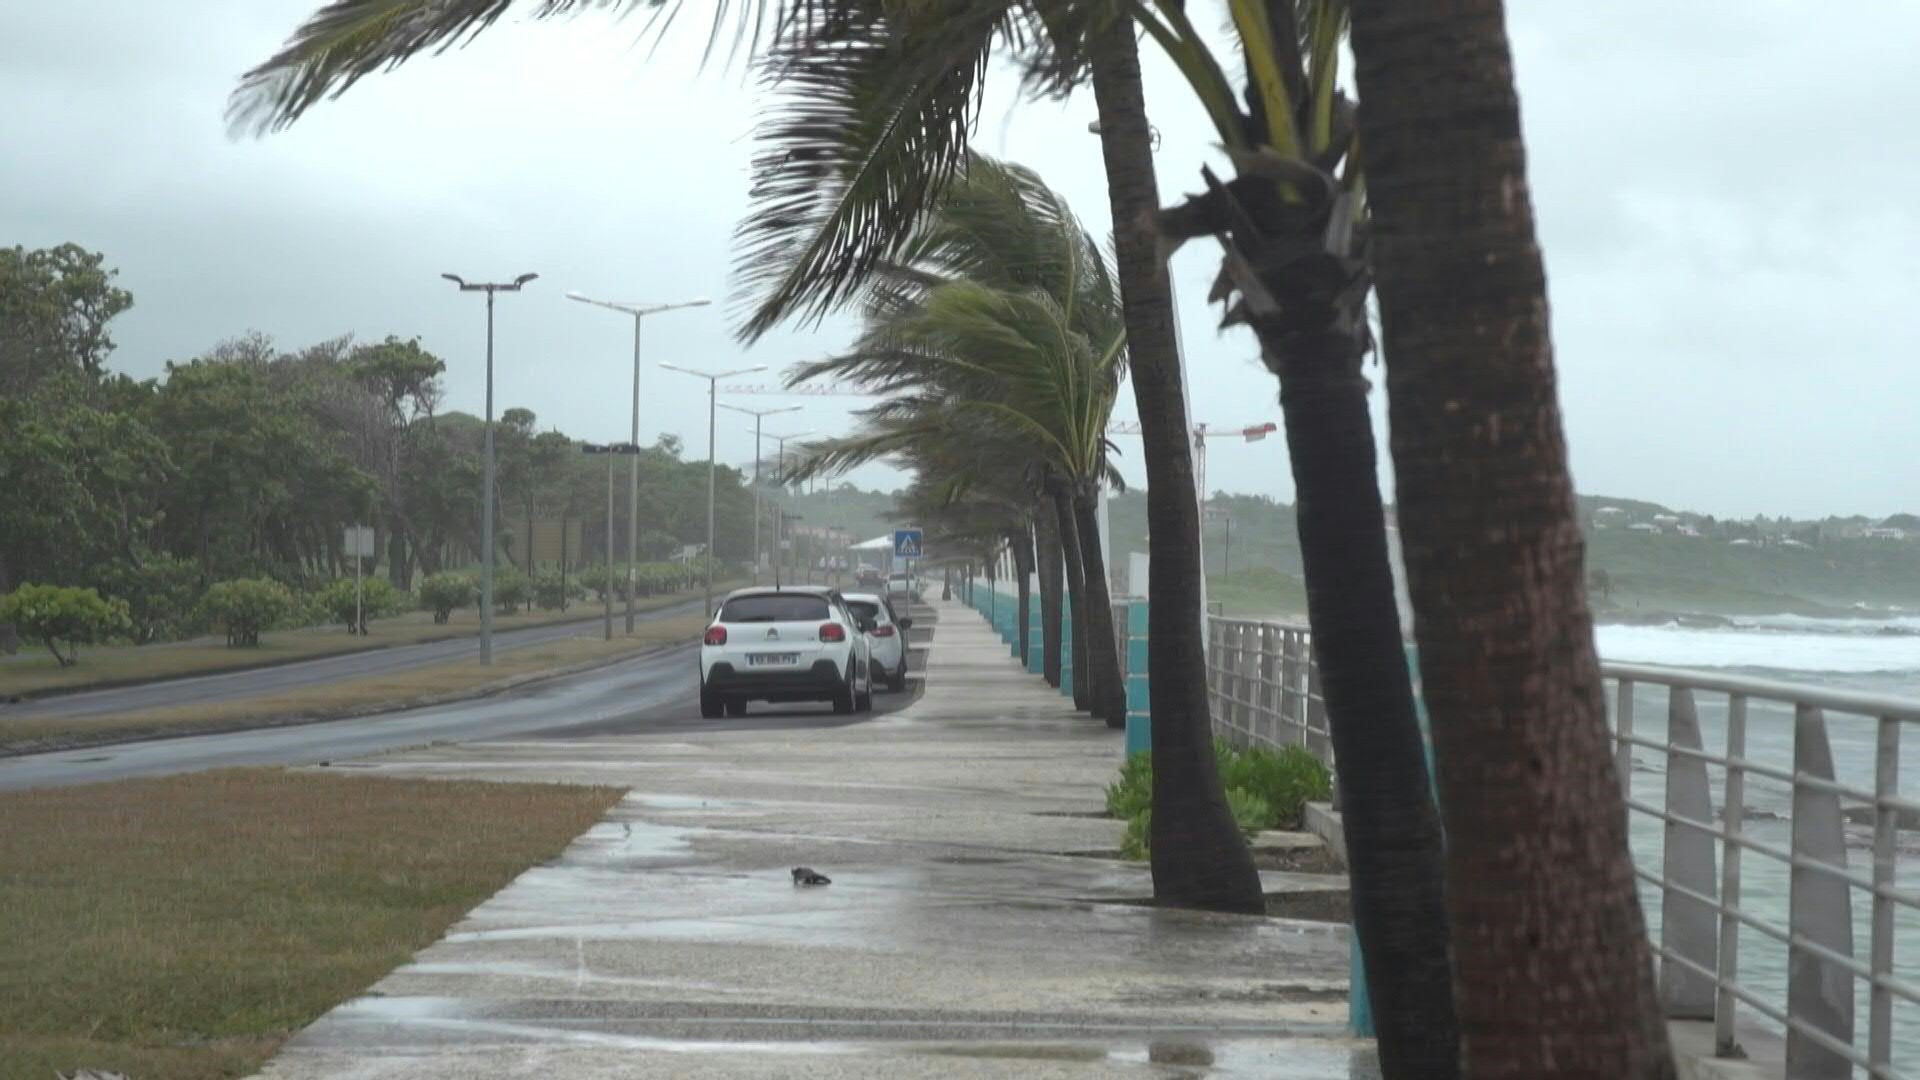 La tormenta tropical Fiona se convirtió en un huracán el domingo al acercarse a las costas de Puerto Rico, luego de que el fenómeno dejara una persona fallecida y graves daños a su paso por Guadalupe (AFP)